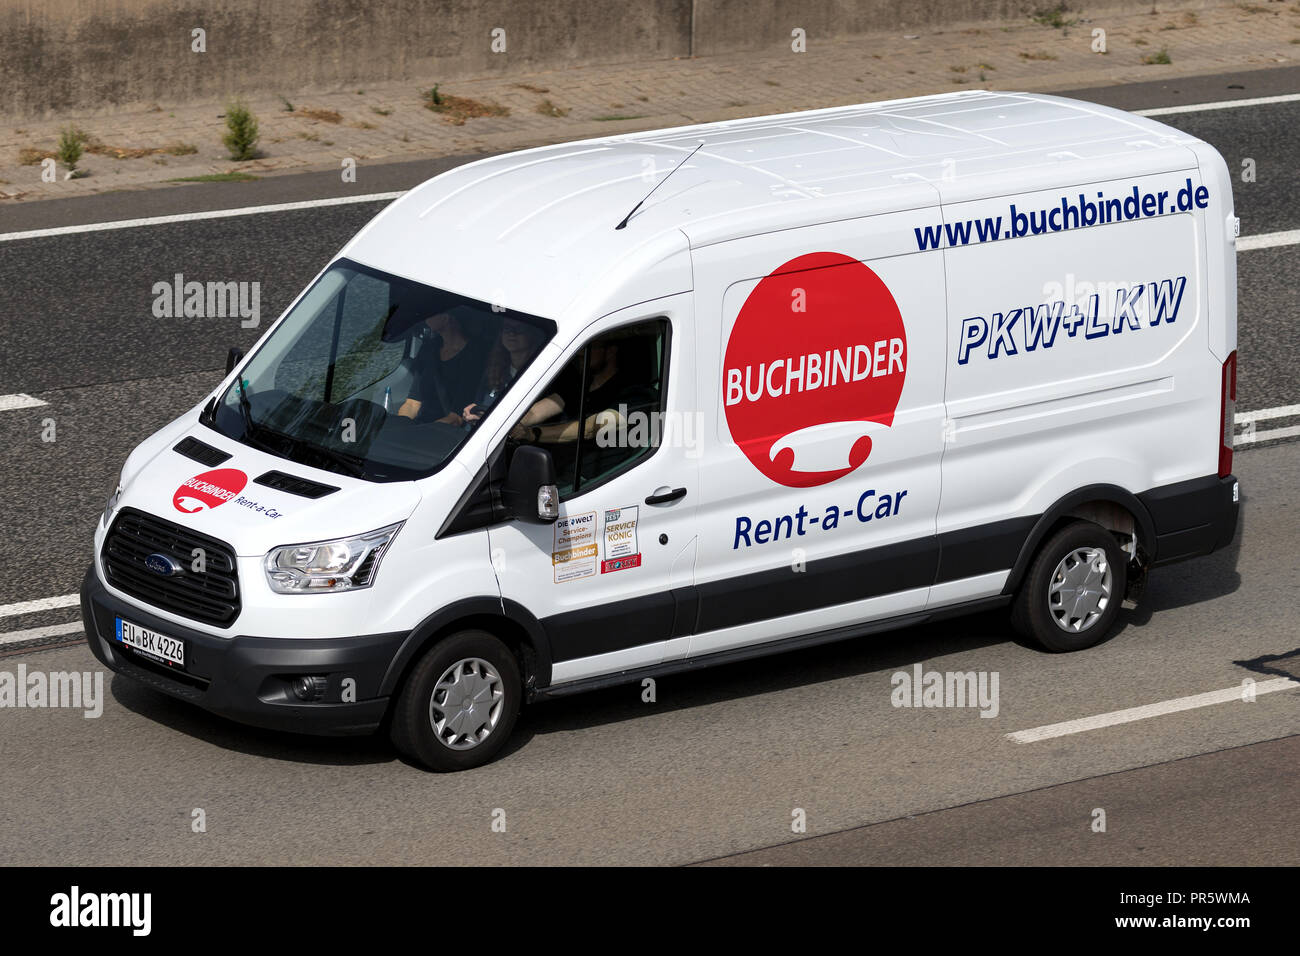 Ford Transit de Buchbinder sur autoroute. Buchbinder est une compagnie de location de voiture et d'une partie des Français Europcar Groupe de mobilité. Banque D'Images